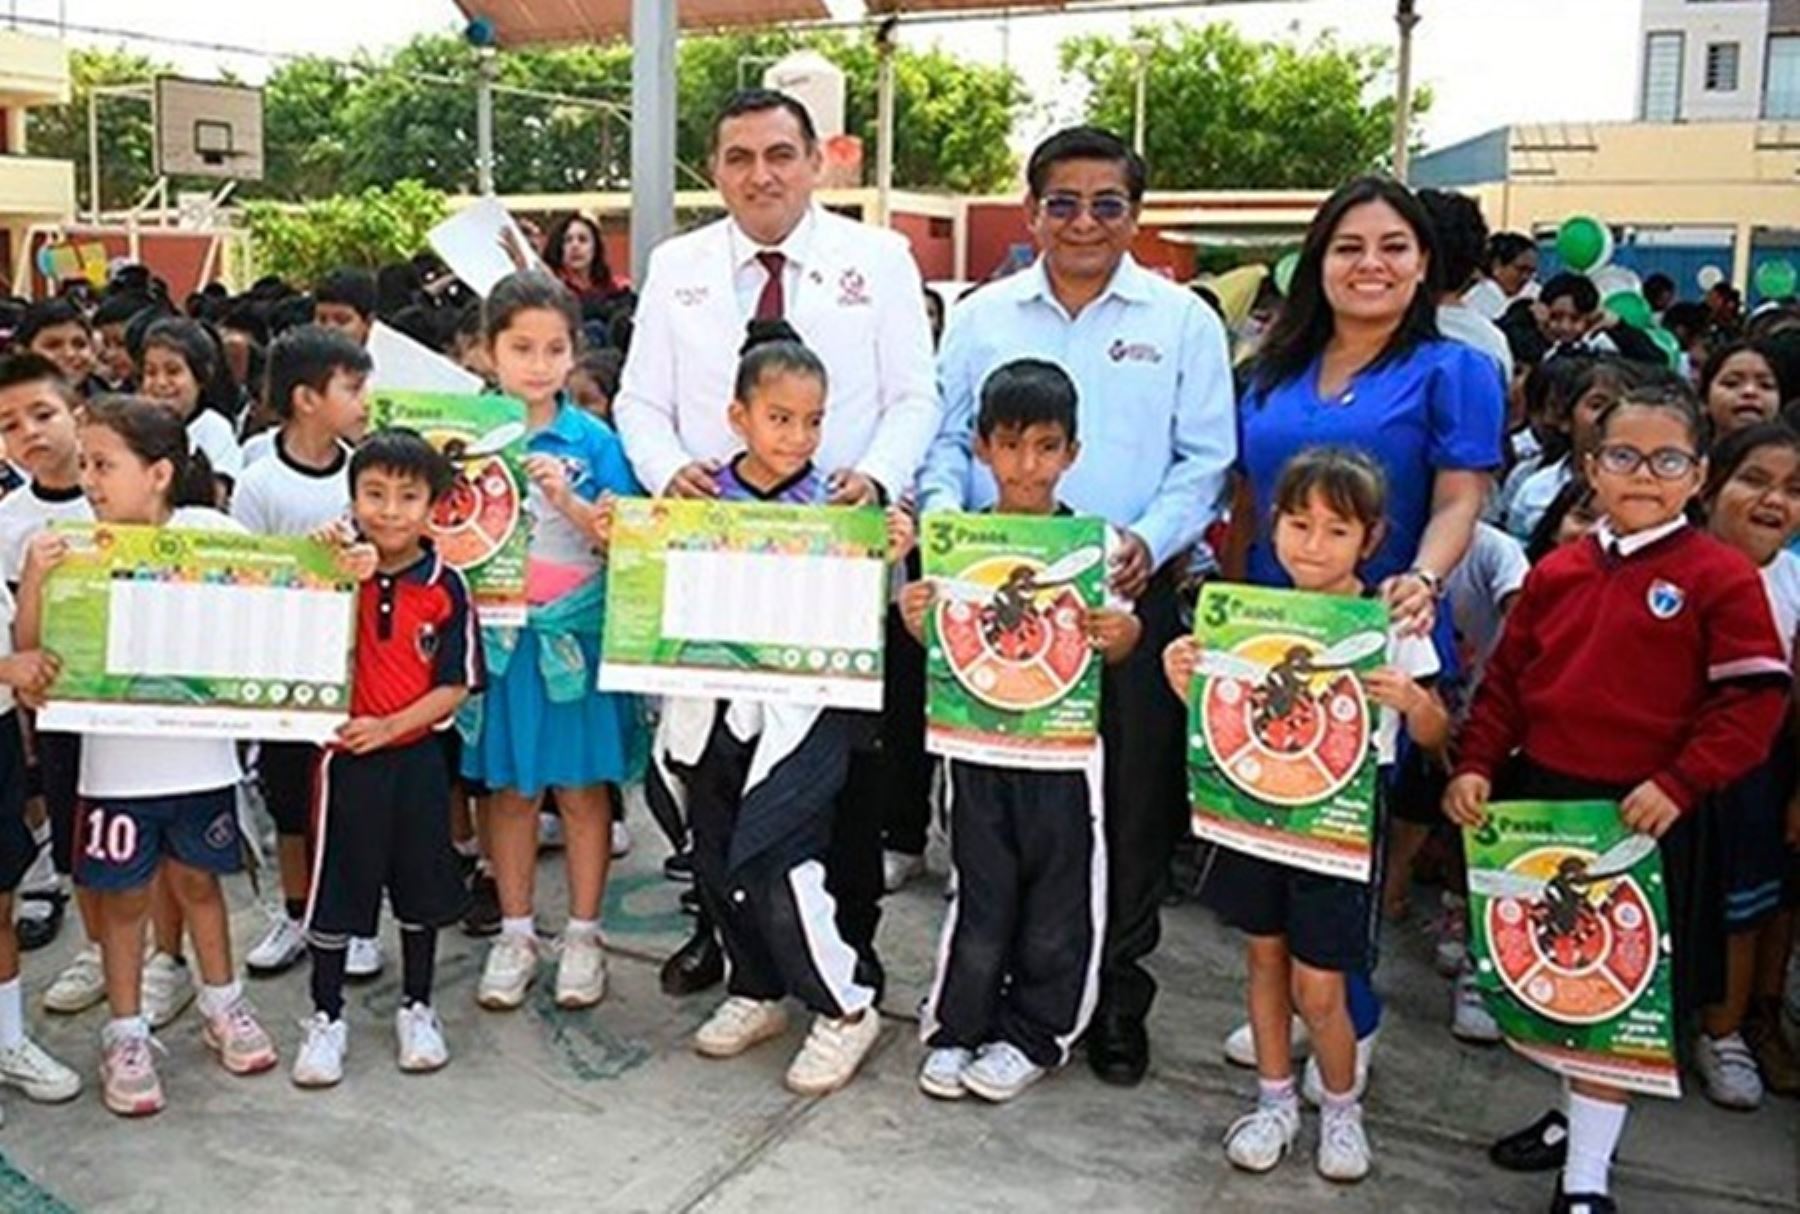 El Ministerio de Salud, a través de la Gerencia Regional de Salud (Geresa) de Lambayeque, lanzó la campaña "Cole Seguro: sin Dengue y sin zancudos", con el objetivo de prevenir la propagación del dengue en la región.